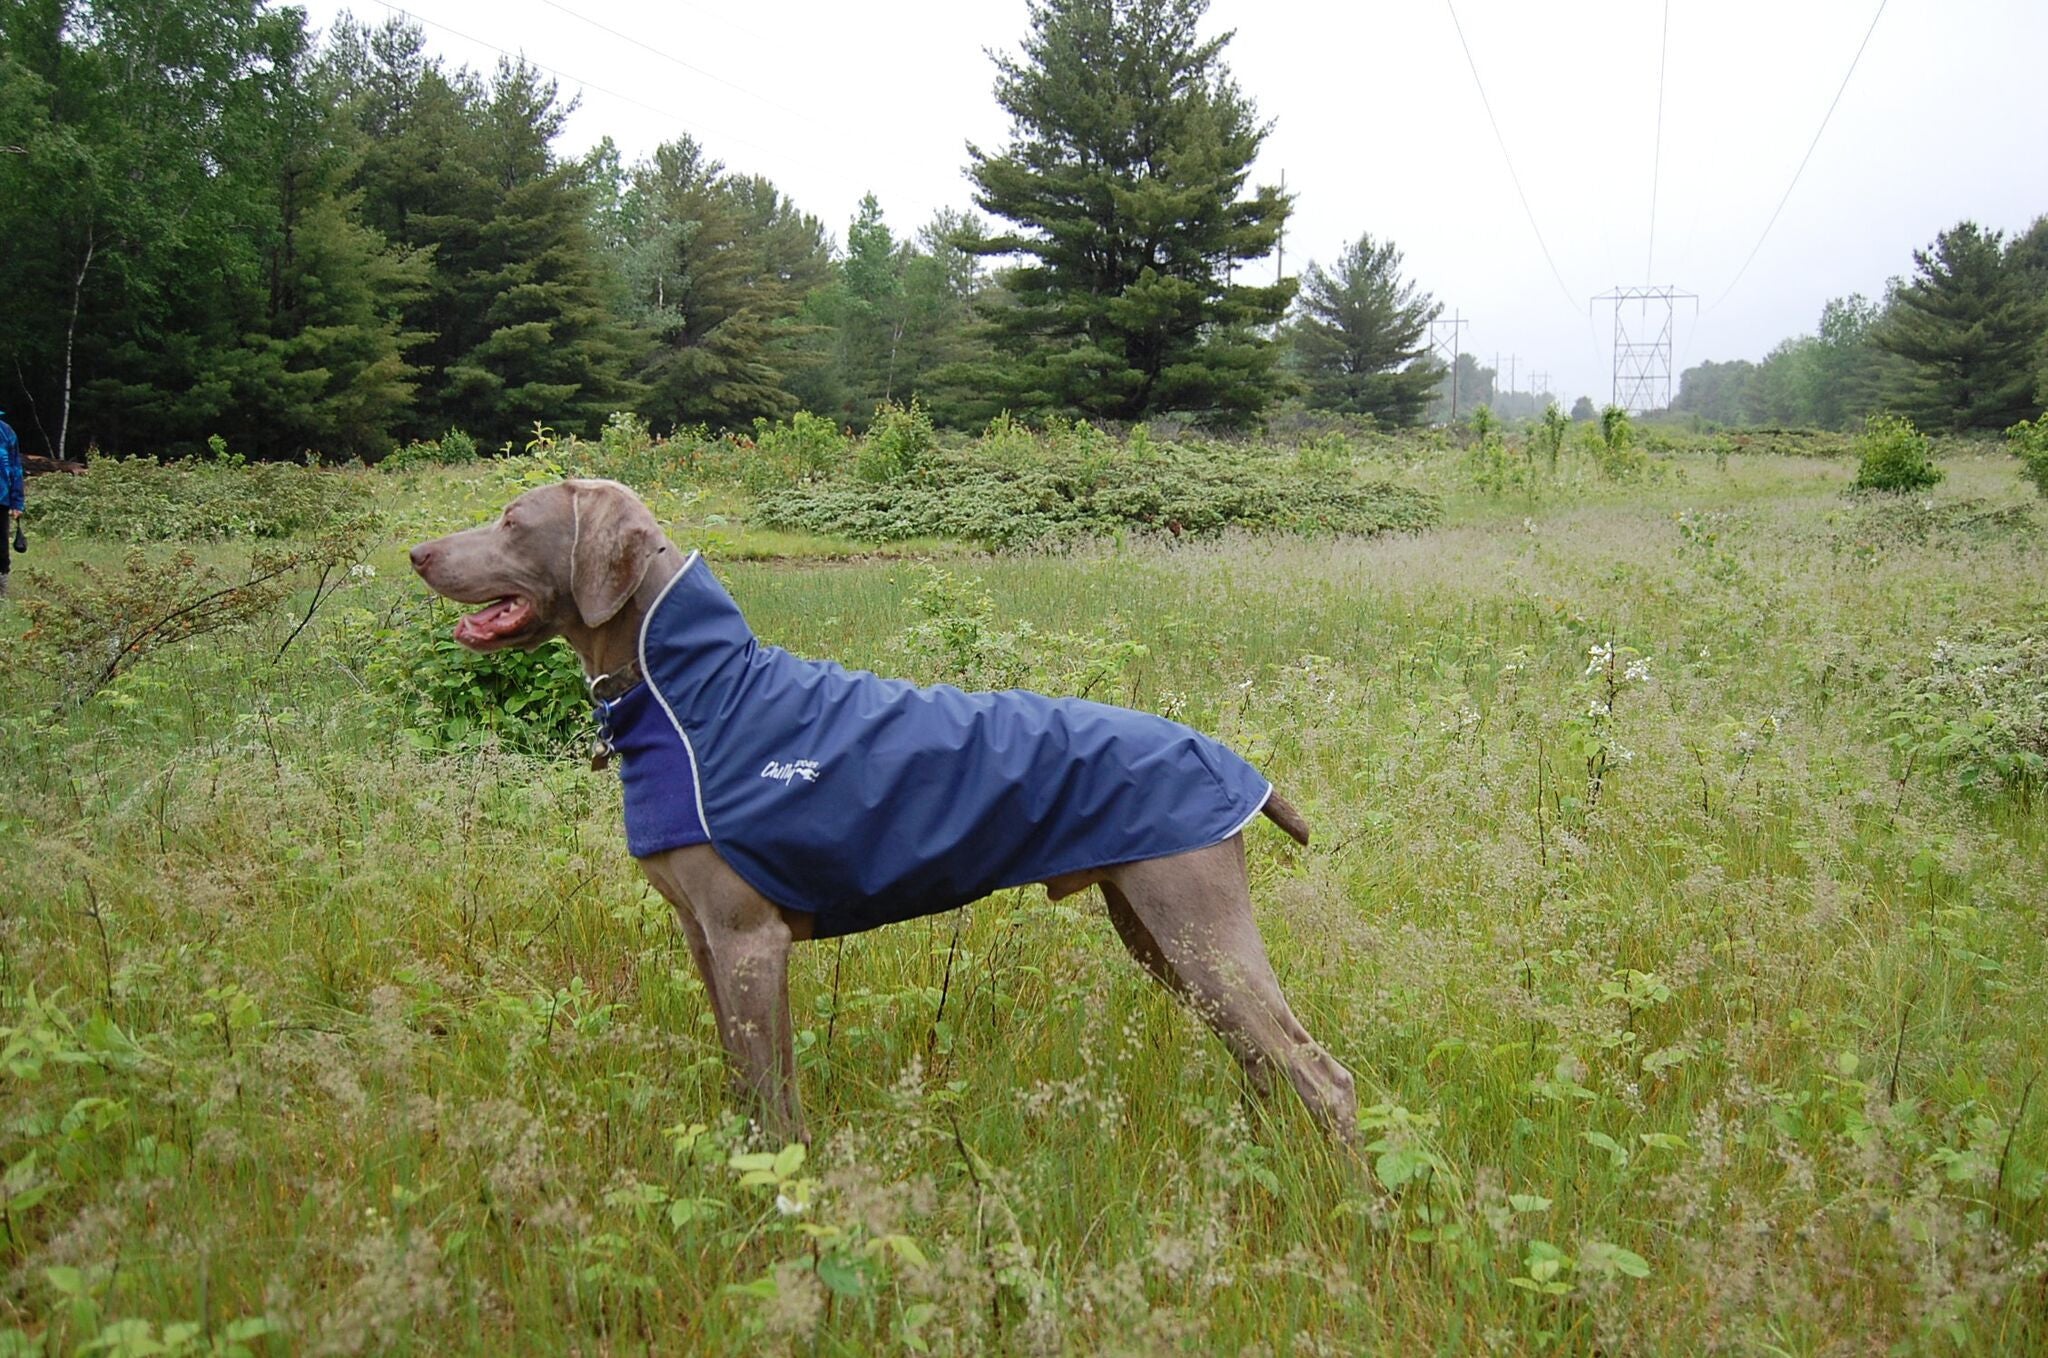 trail blazers dog jersey